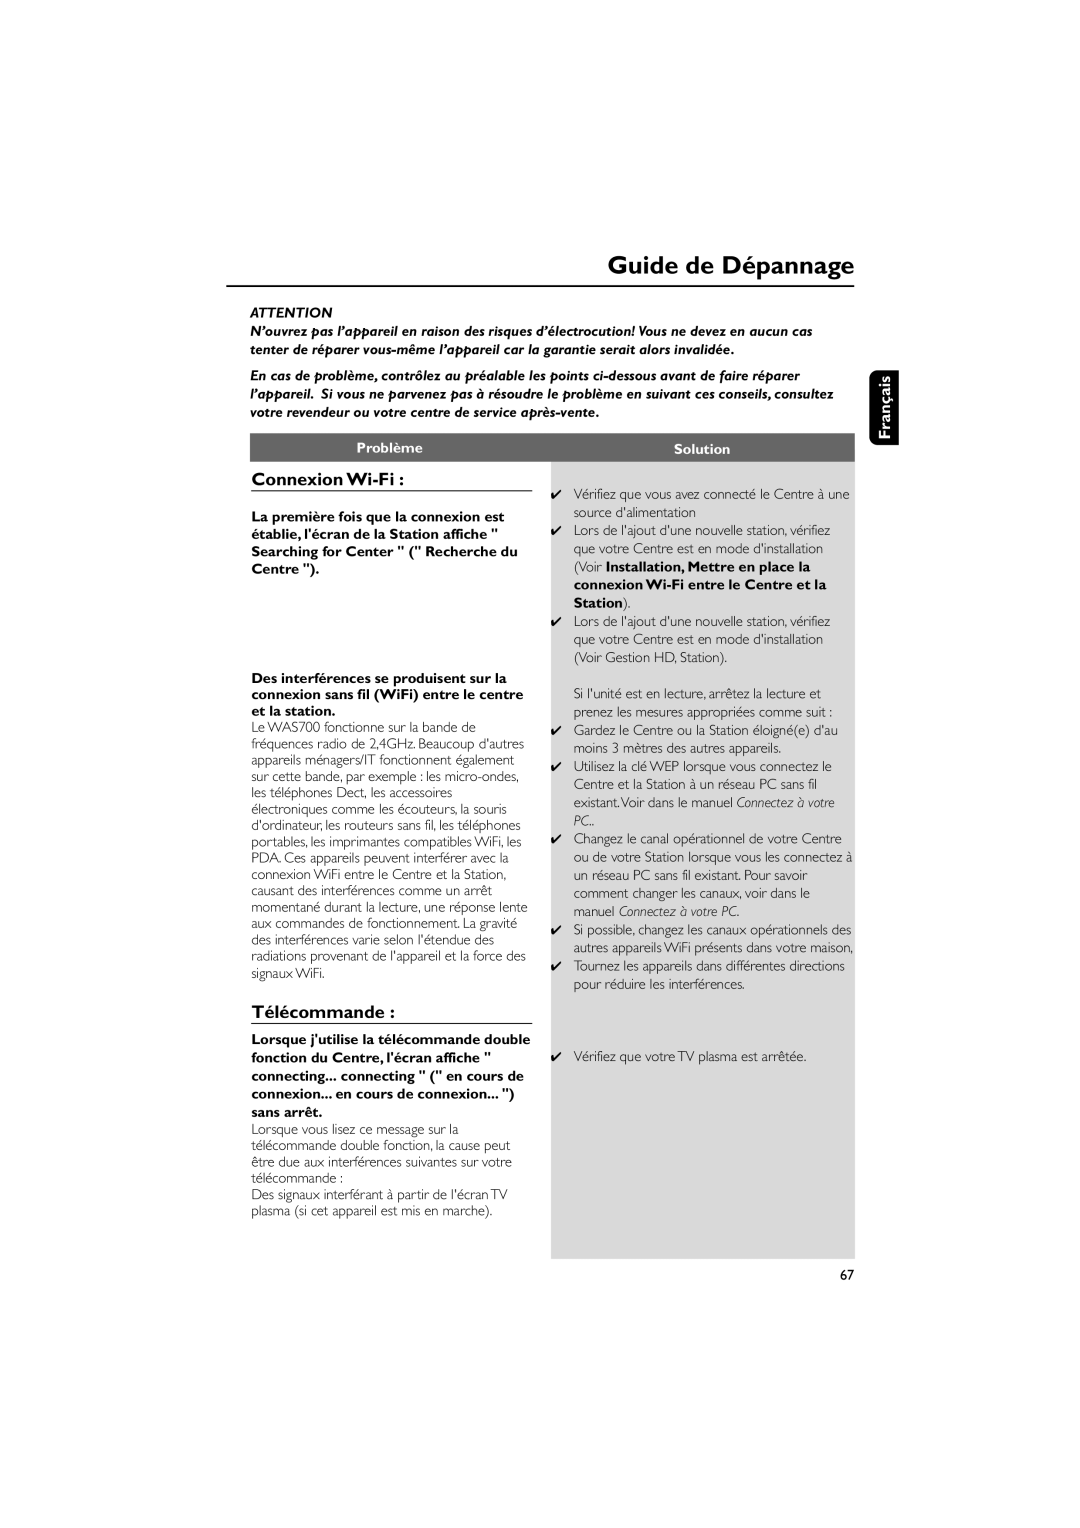 Philips WAS700 owner manual Guide de Dépannage, Connexion Wi-Fi, Télécommande, Français, Problème, Solution 